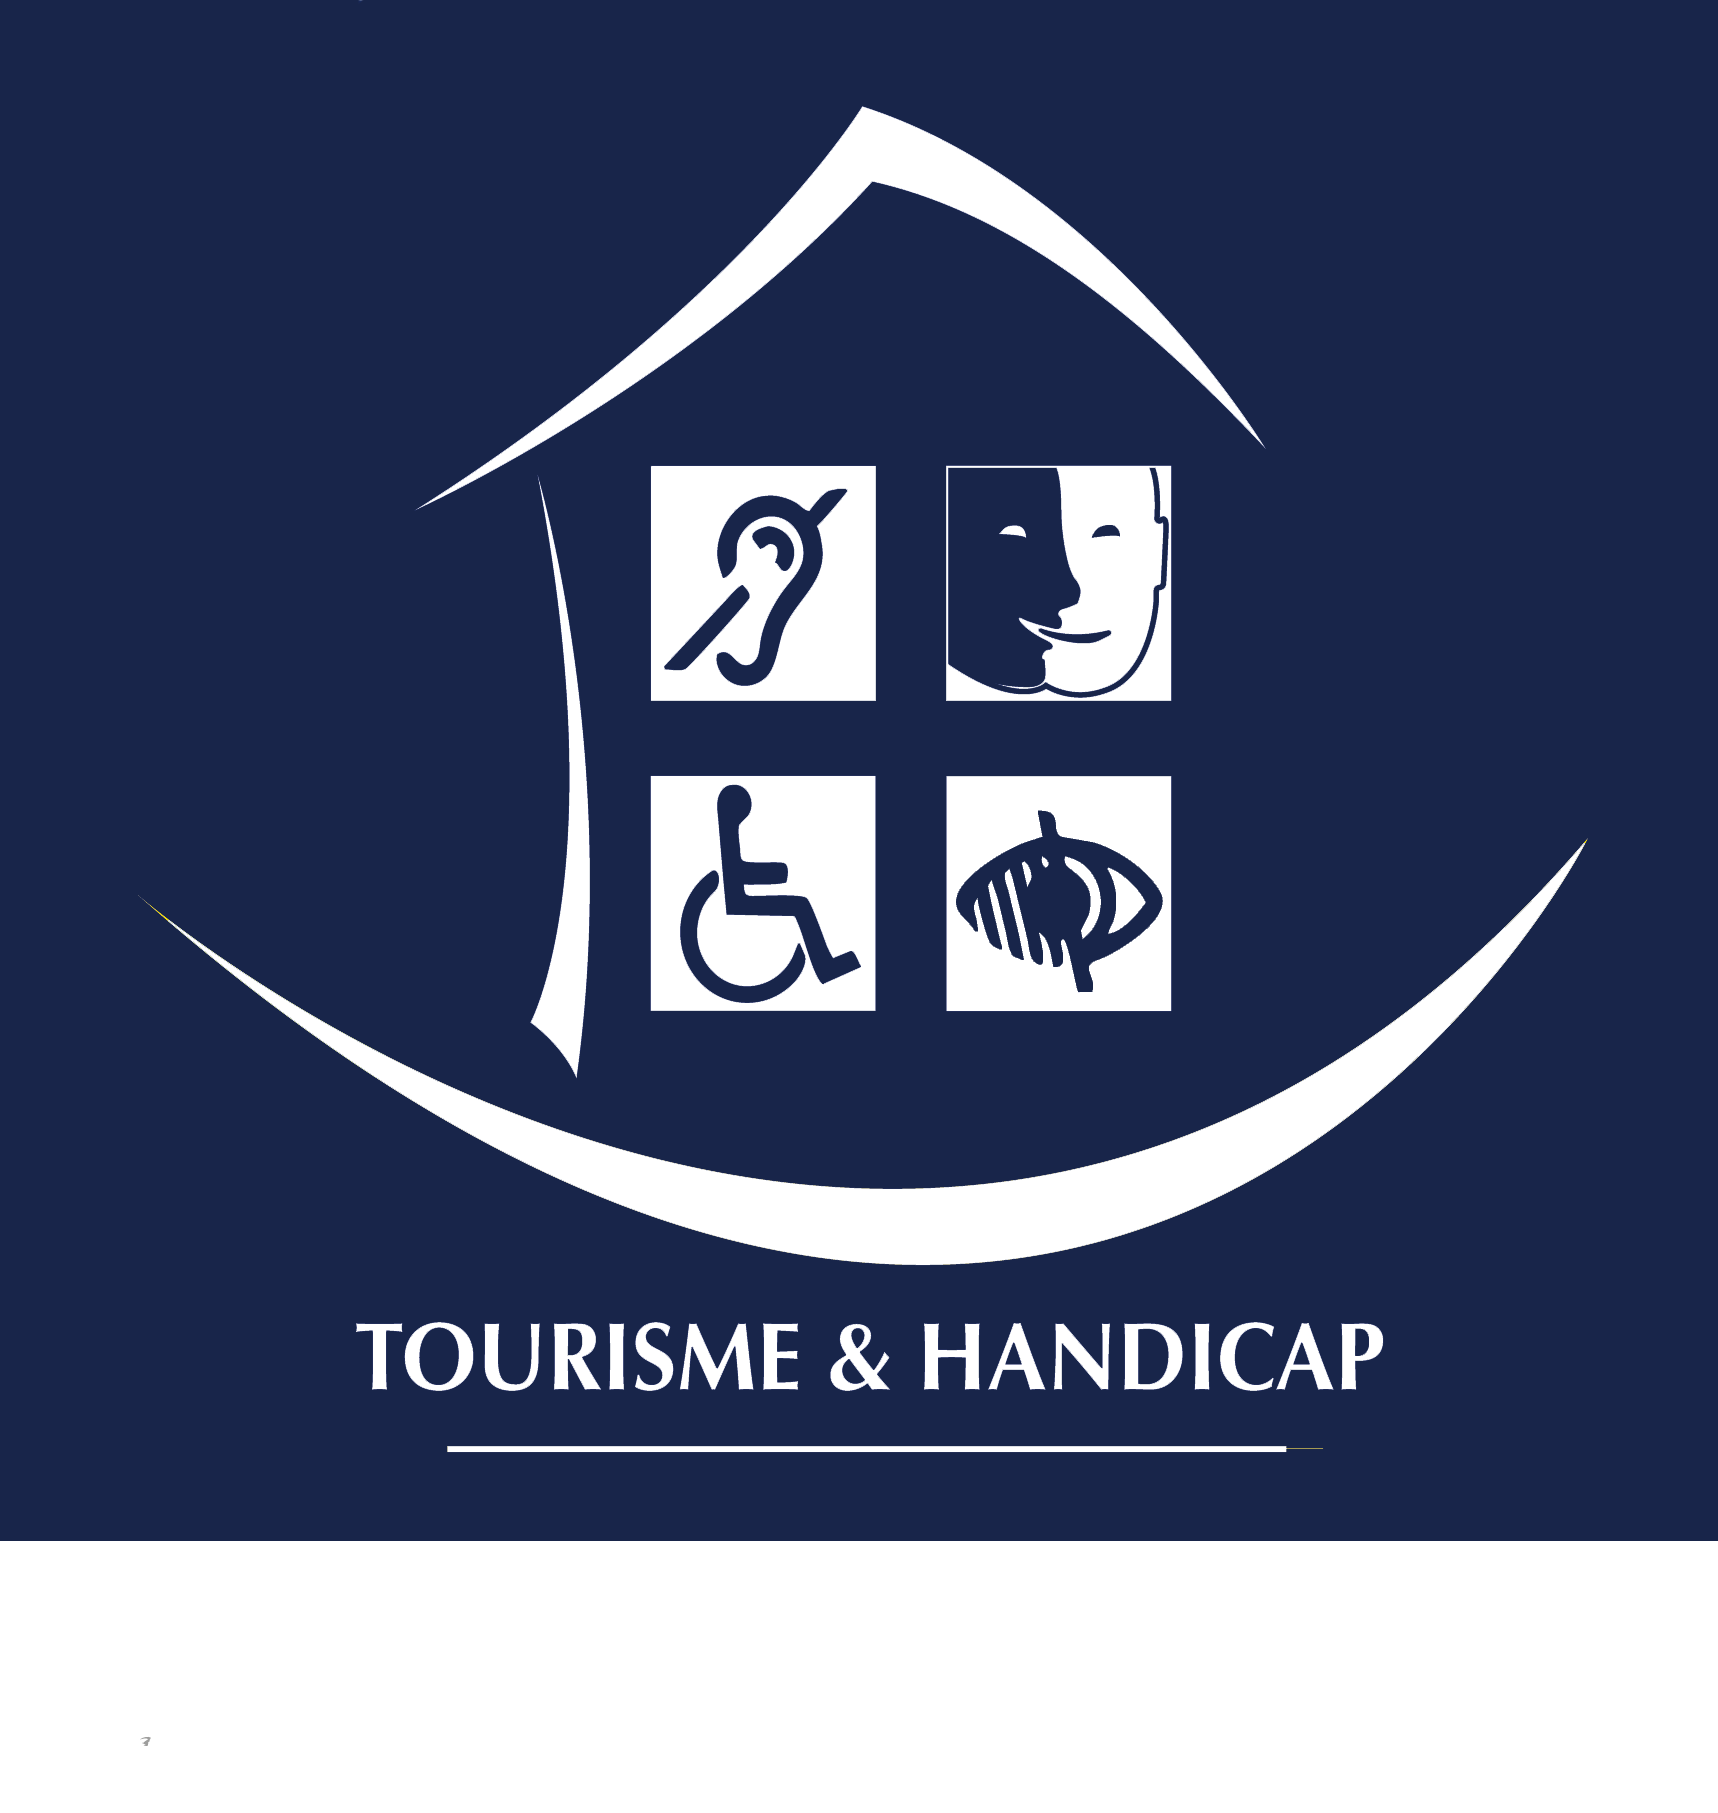 Logo Tourisme et handicap